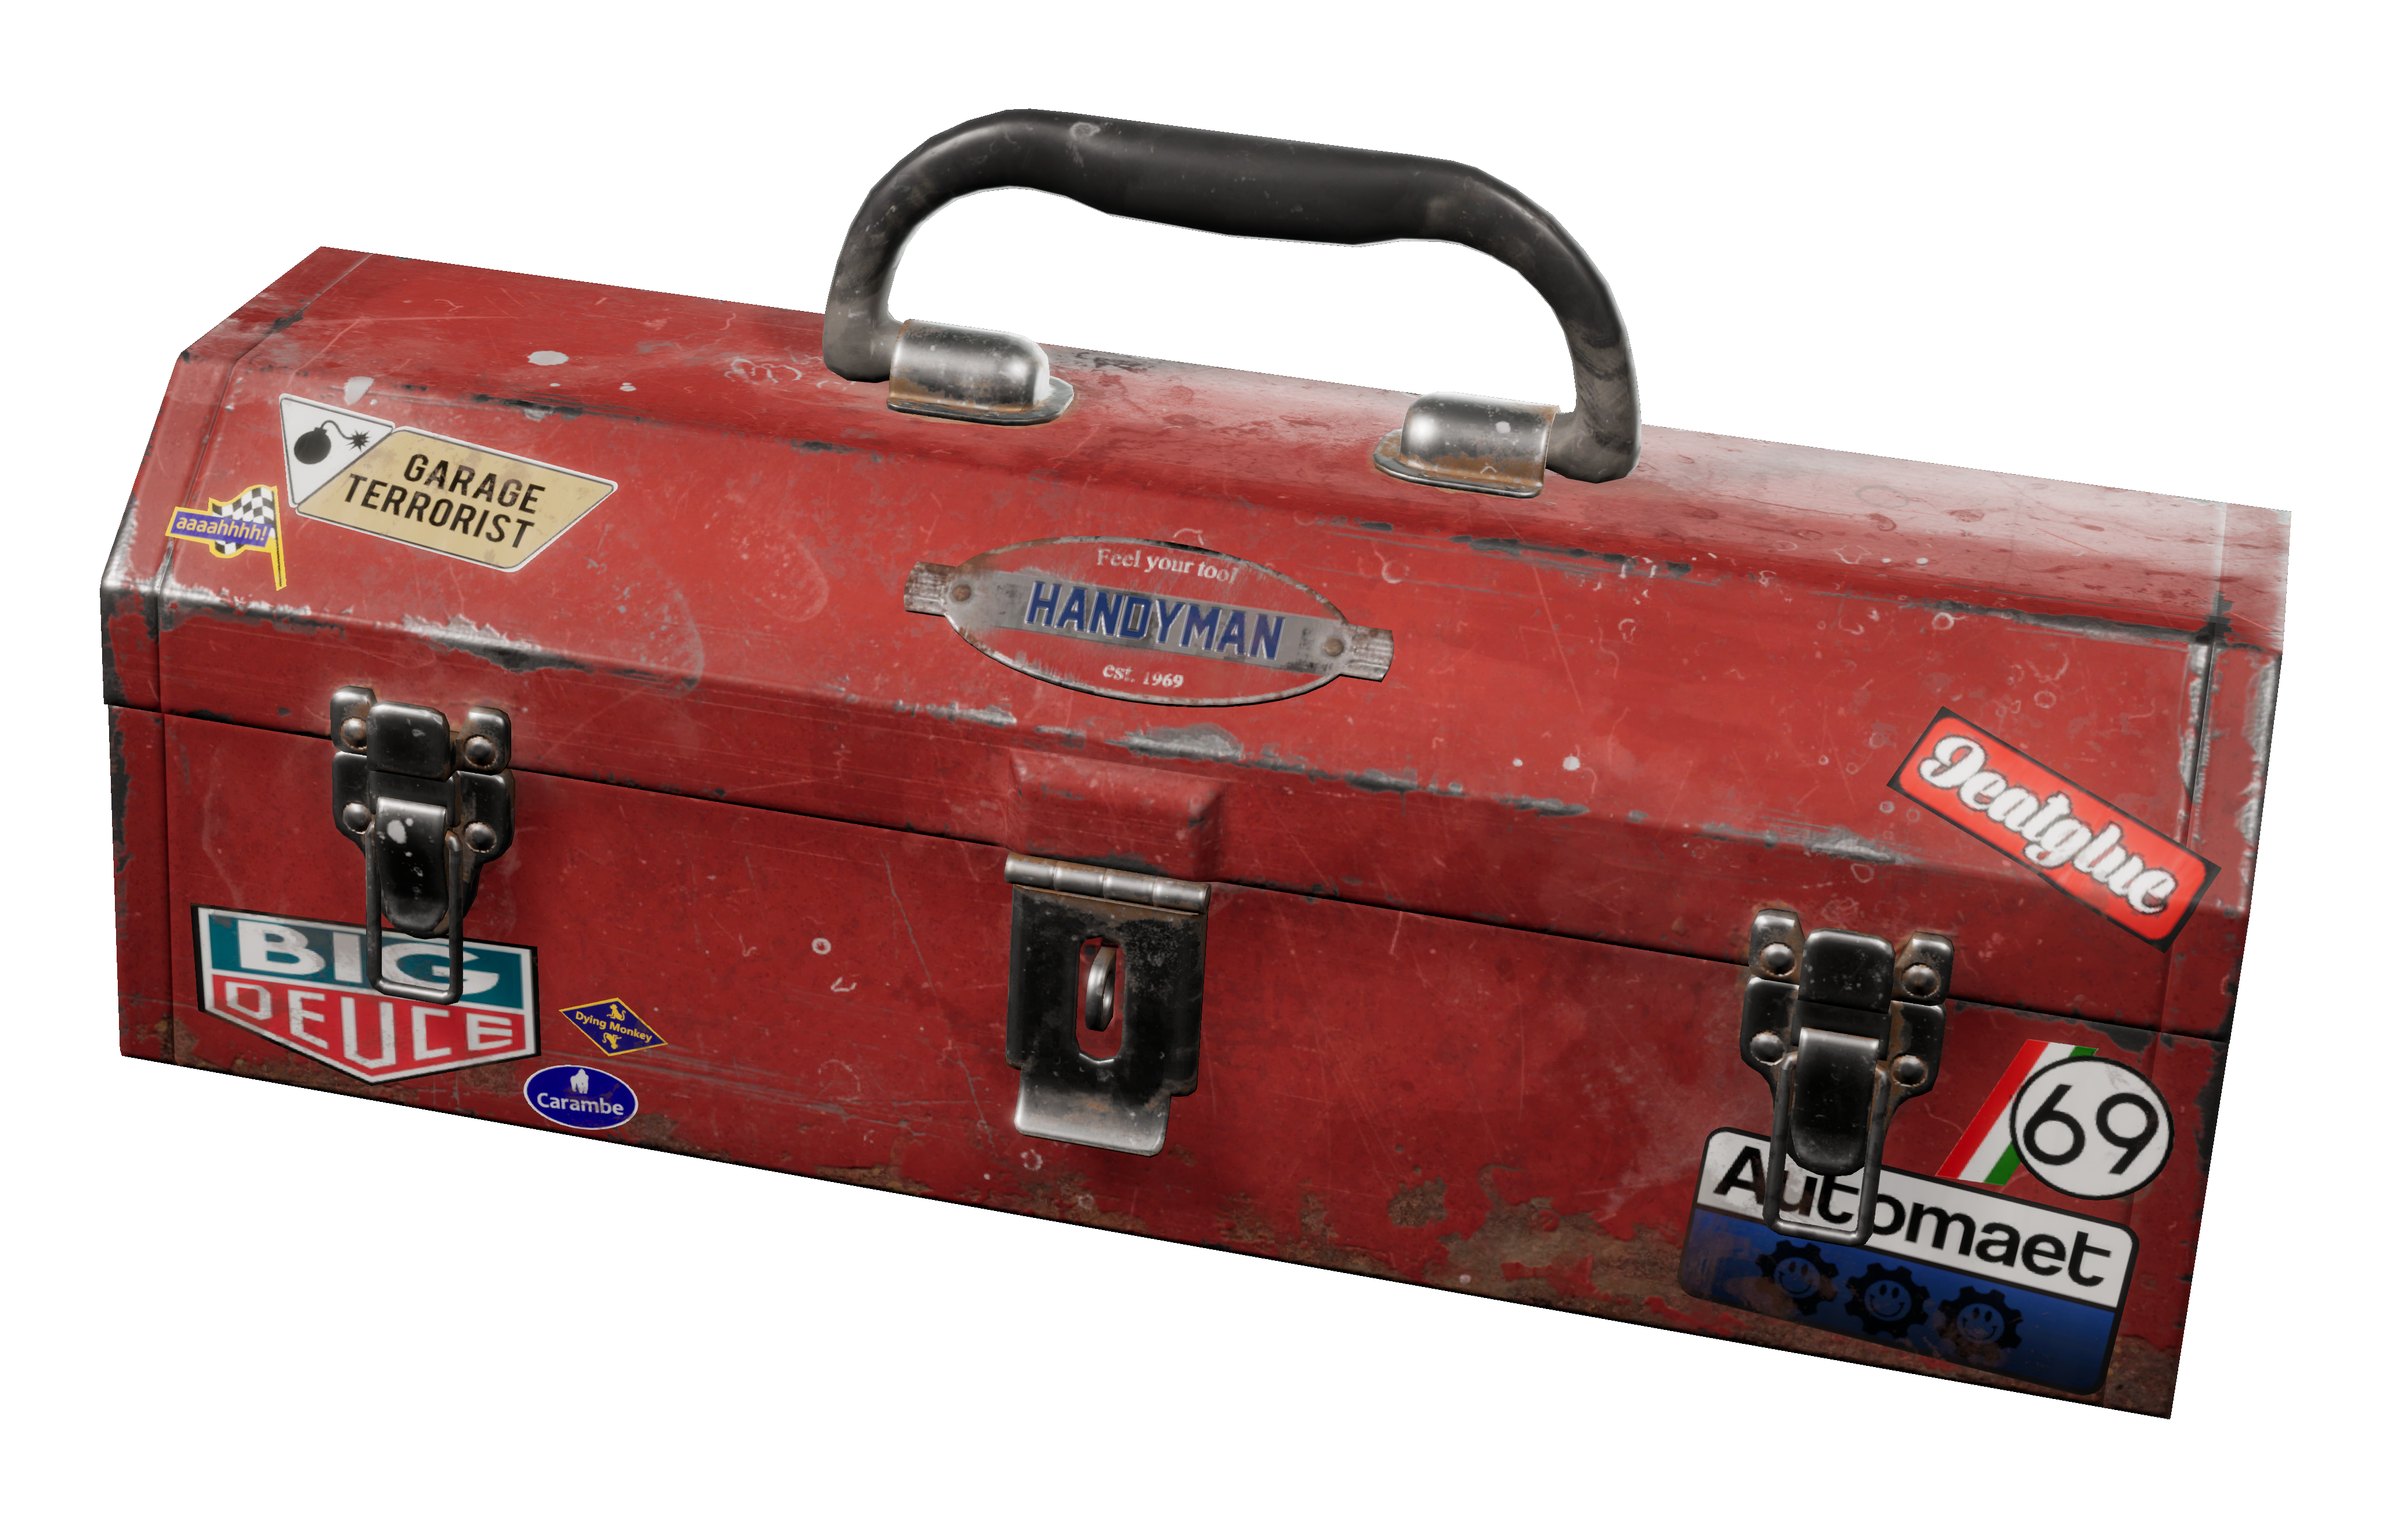 Trunk (luggage) - Wikipedia